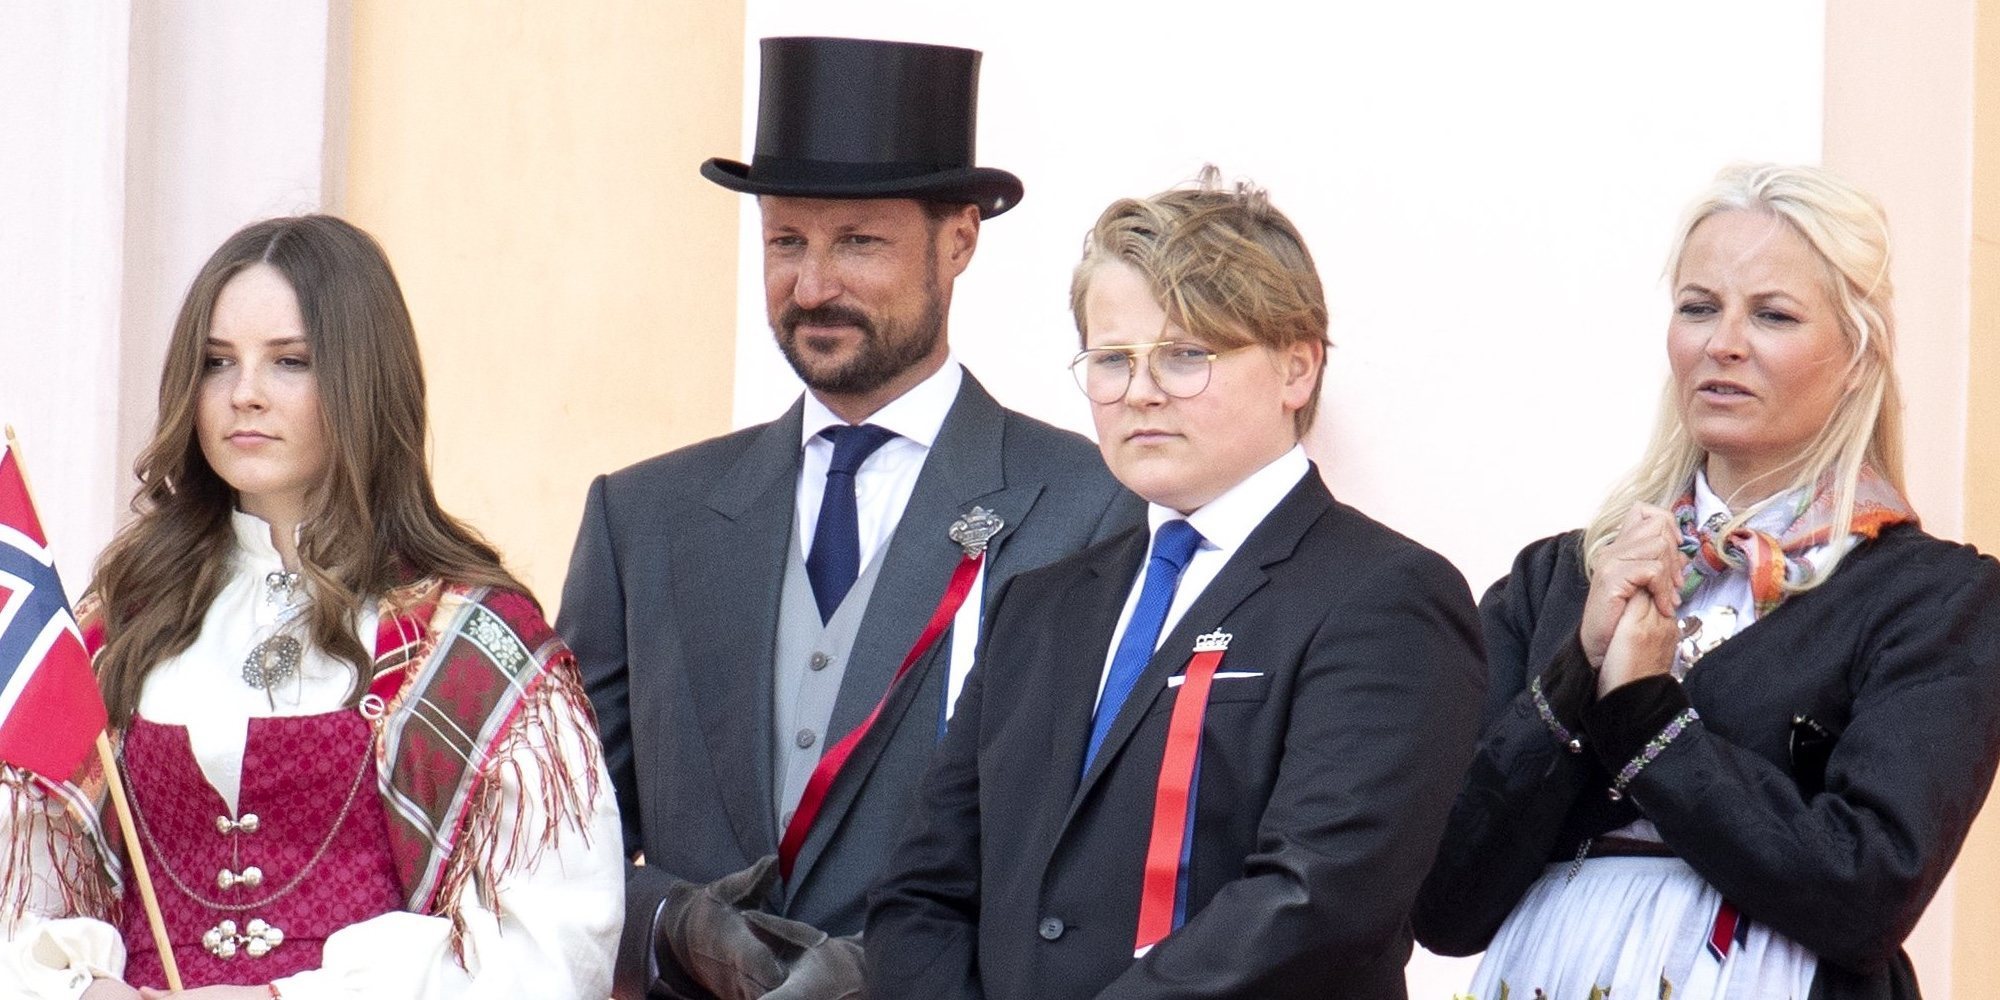 La Familia Real de Noruega celebra un atípico Día Nacional 2020 con una imagen de 'nueva normalidad'